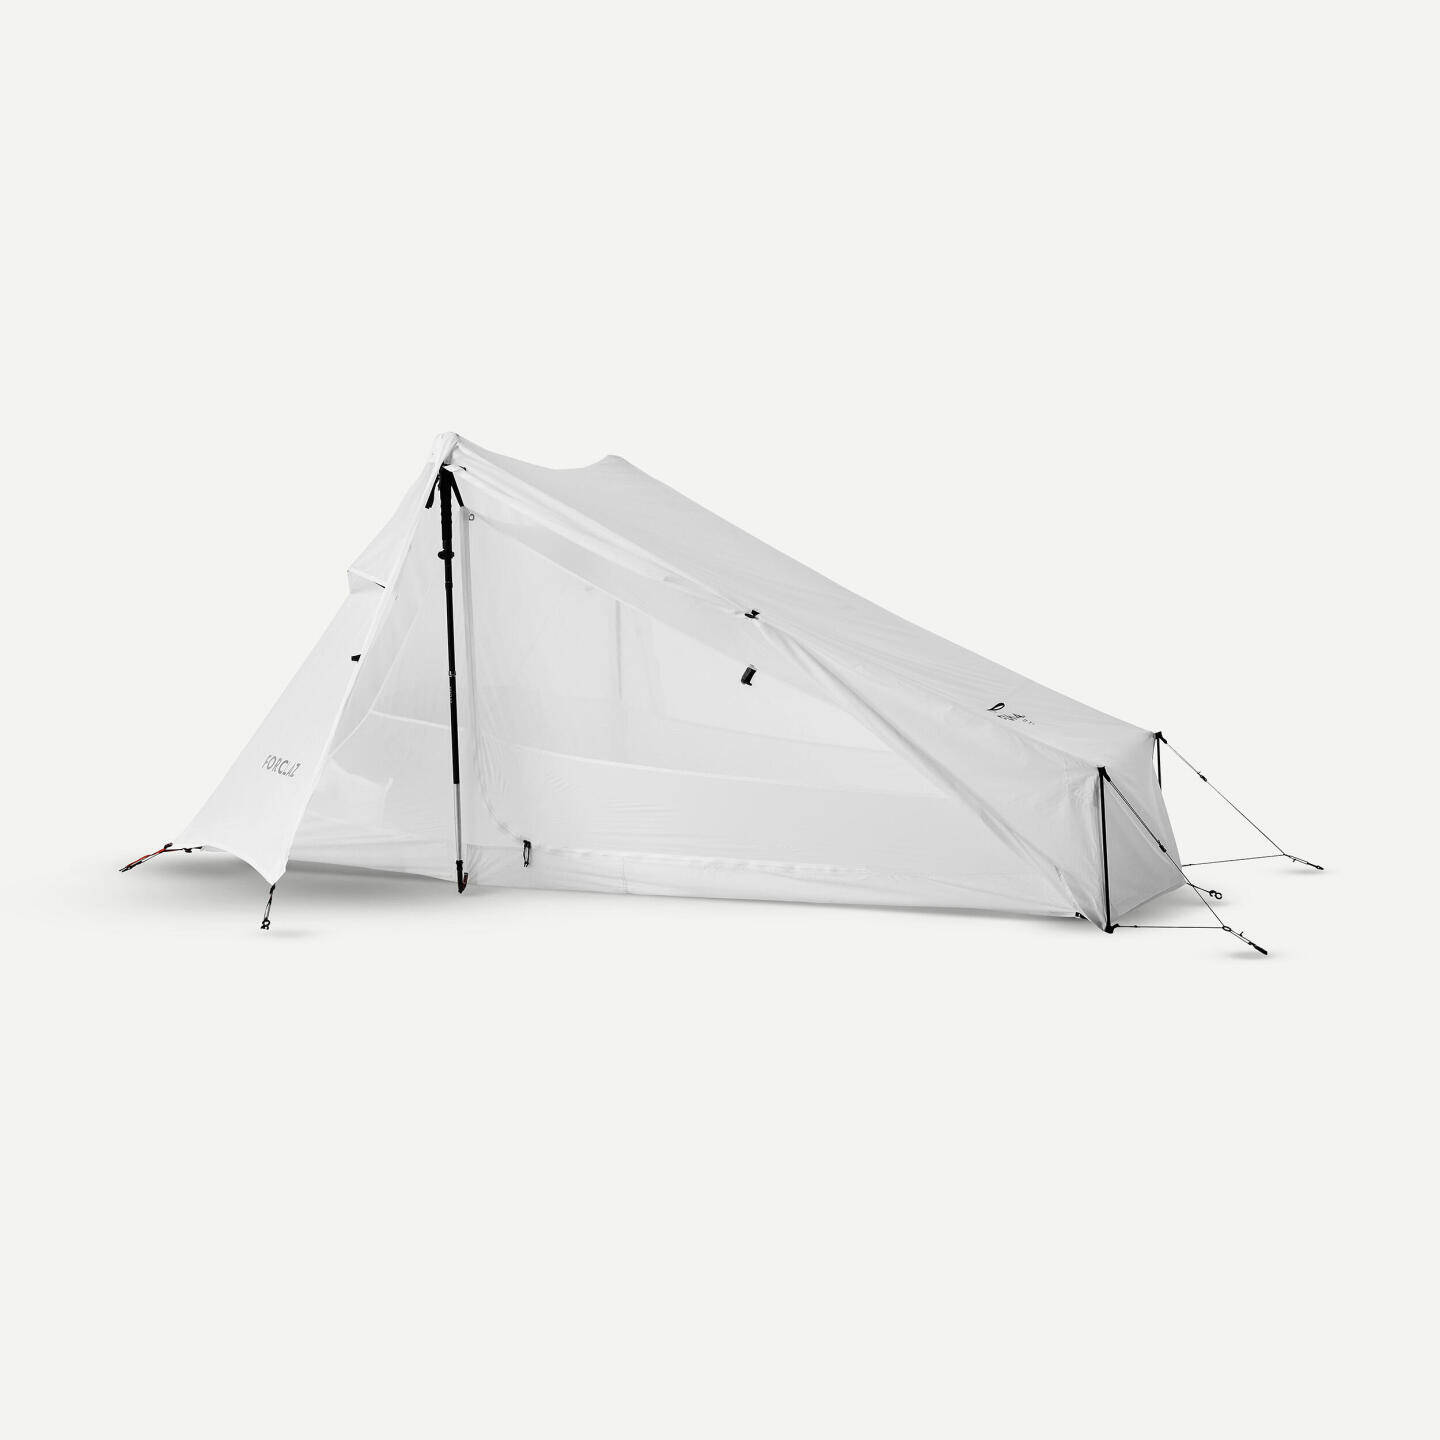 DECATHLON FORCLAZ Tarp Tent - Undyed_2-Personen